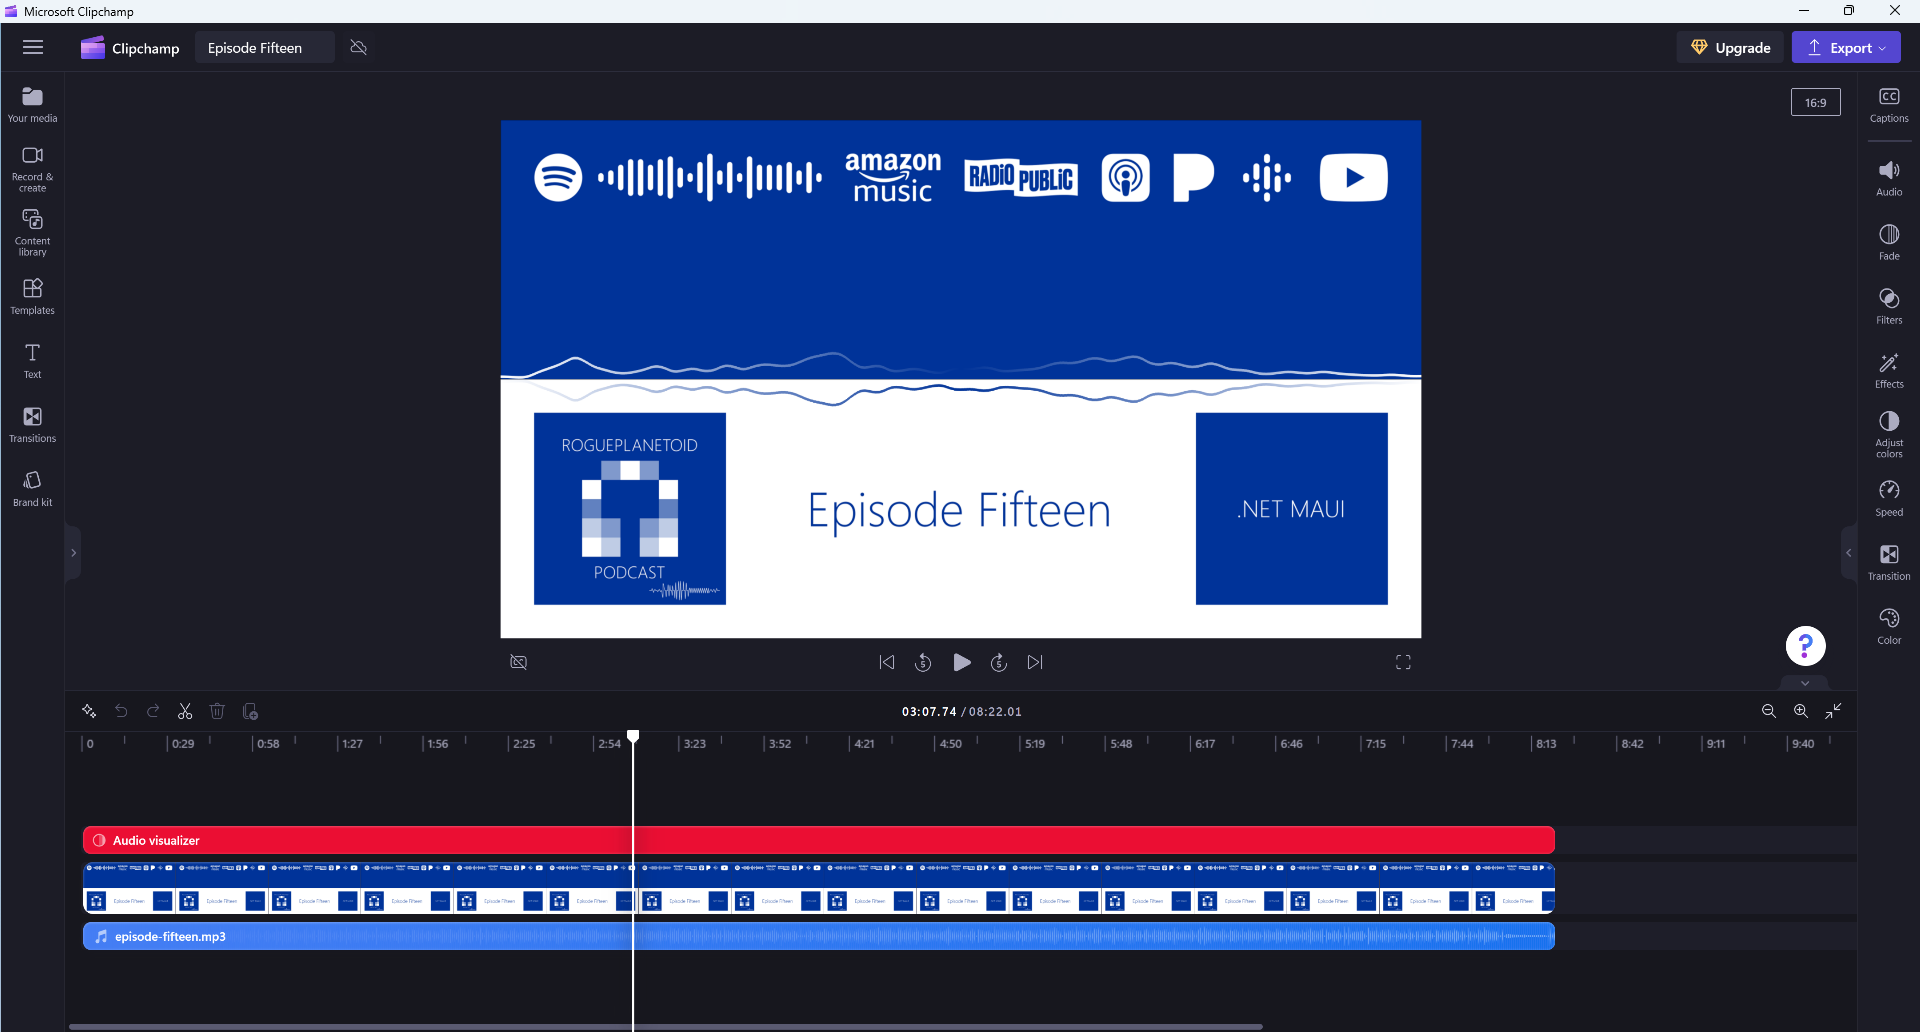 Microsoft Clipchamp - Audio Visualiser